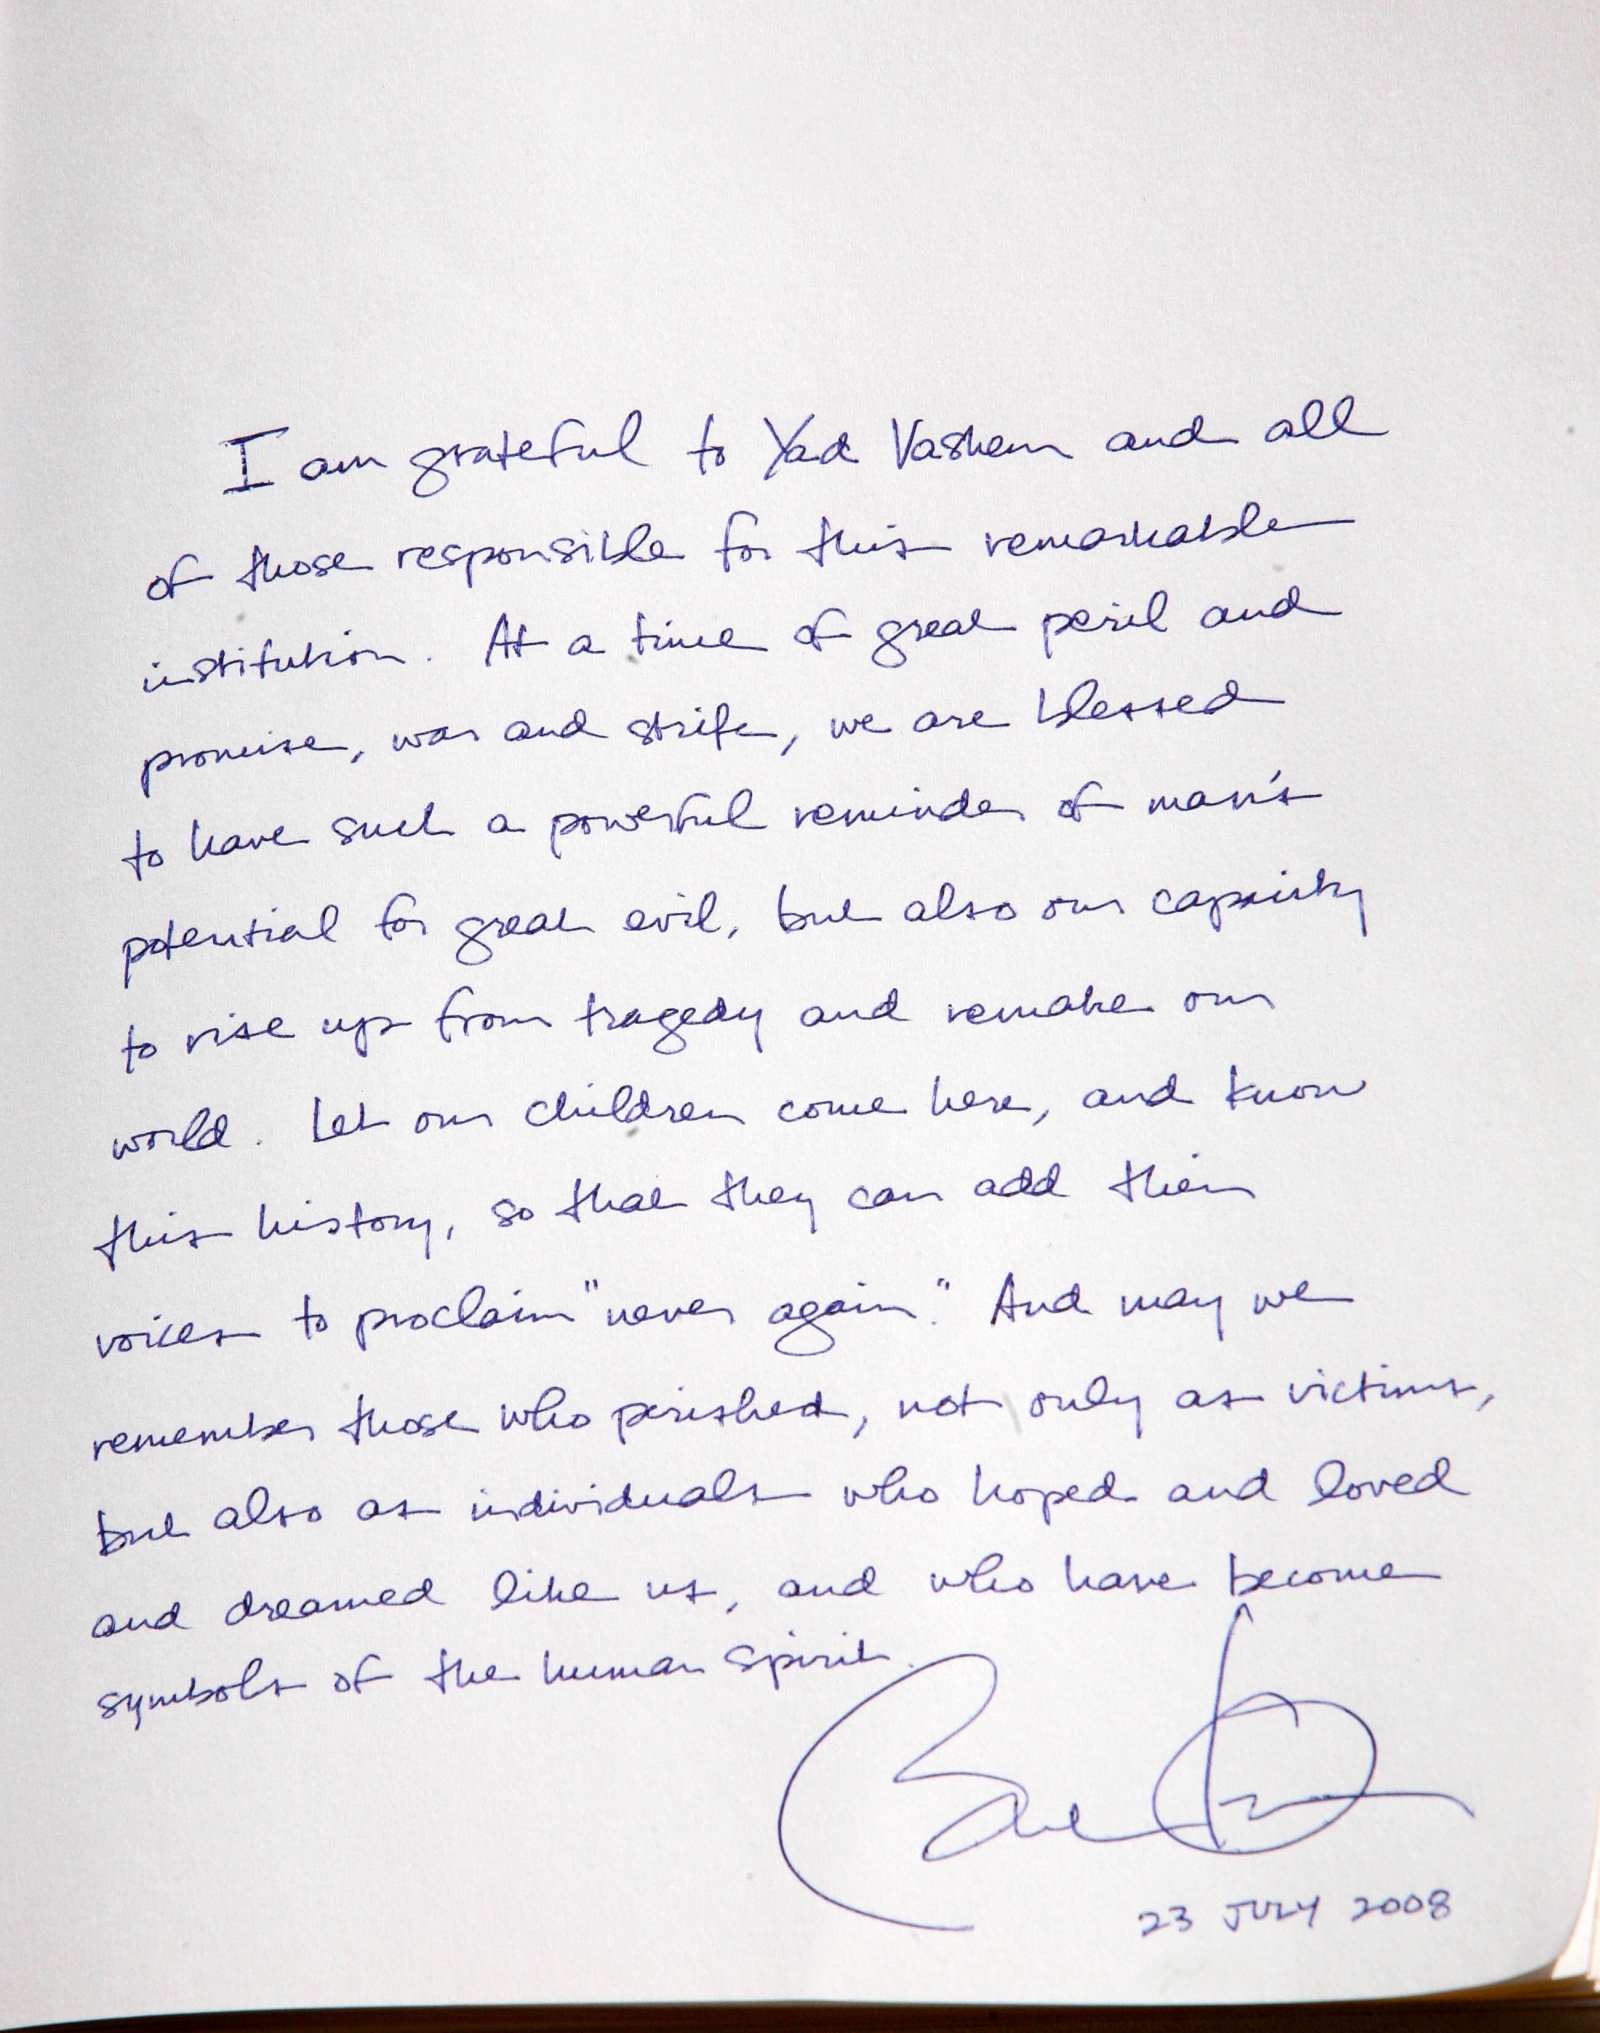 Barack Obamas message at Yad Vashem